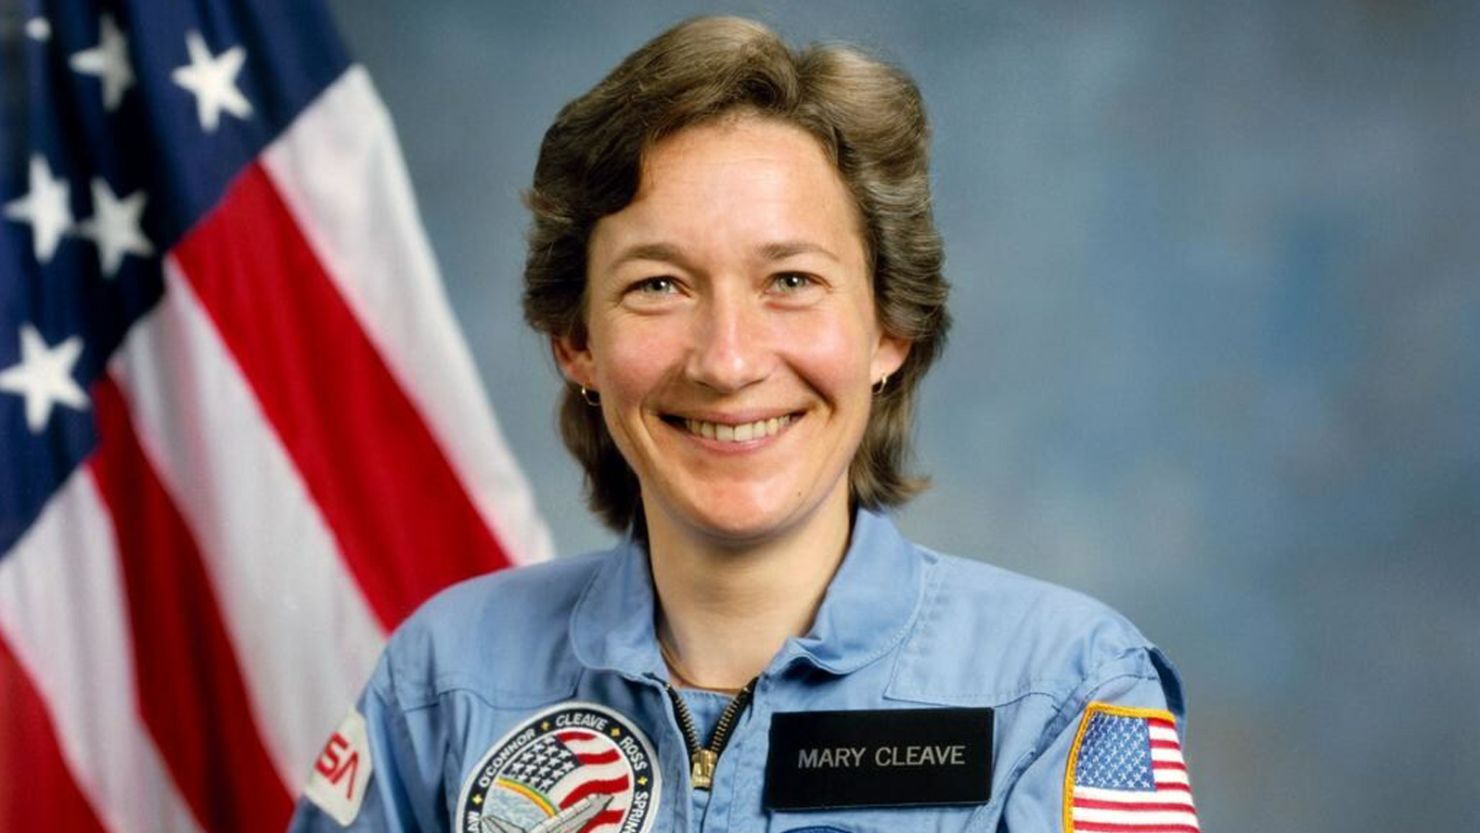 NASA Astronaut Mary L. Cleave. April 8, 1985. Credits: NASA